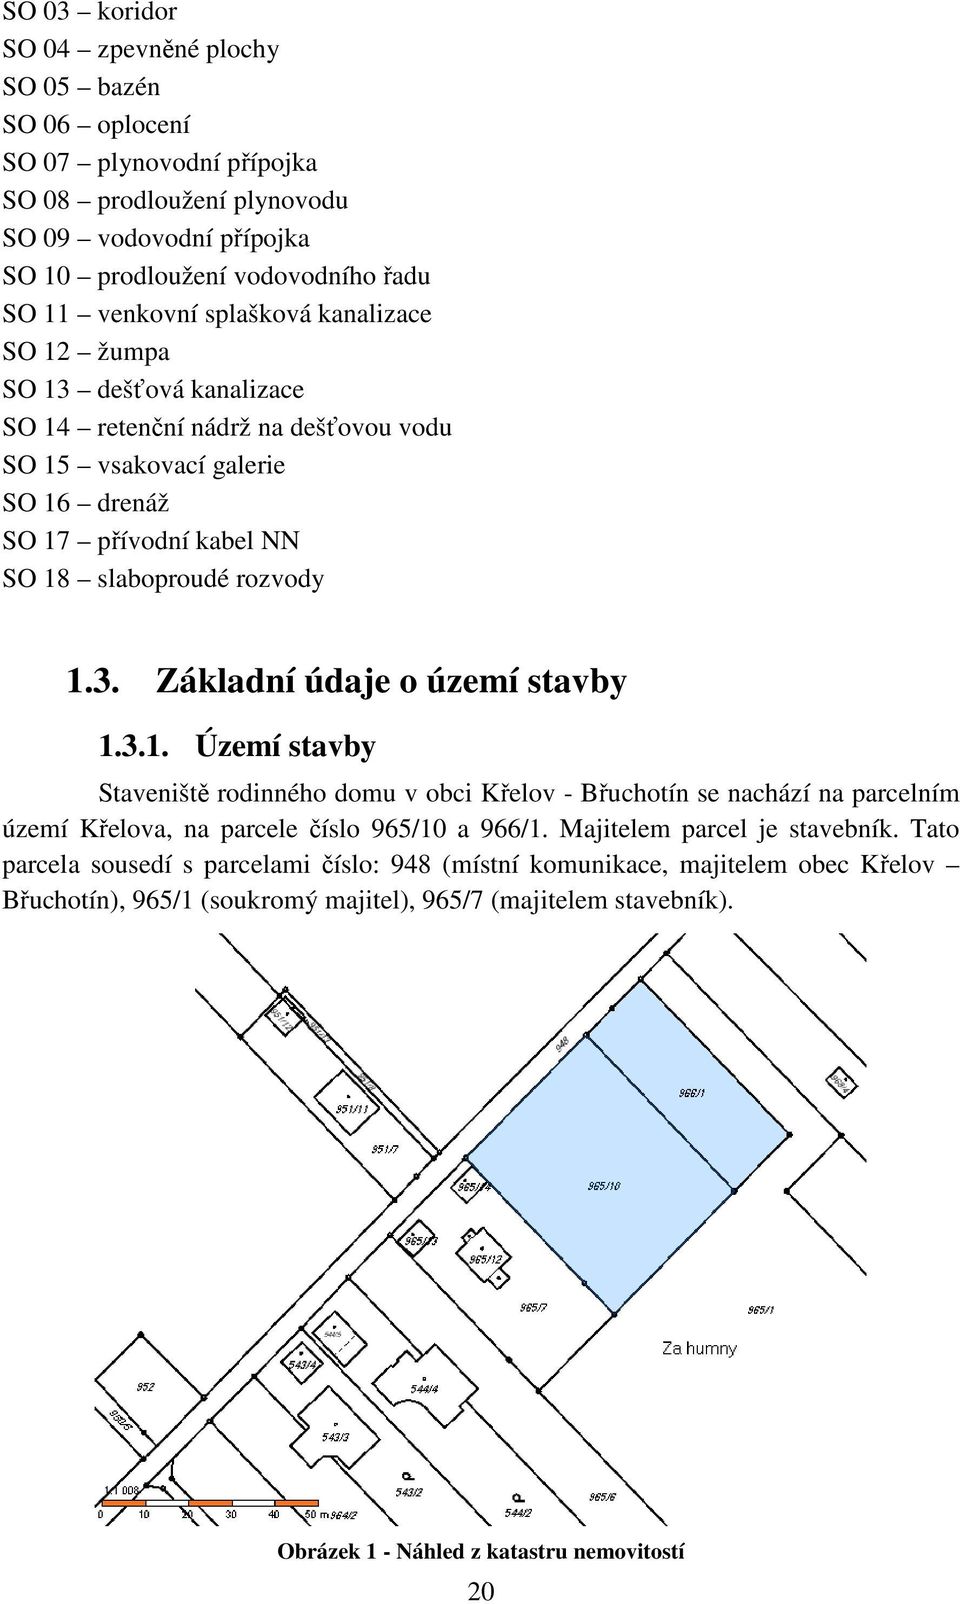 3.1. Území stavby Staveniště rodinného domu v obci Křelov - Břuchotín se nachází na parcelním území Křelova, na parcele číslo 965/10 a 966/1. Majitelem parcel je stavebník.